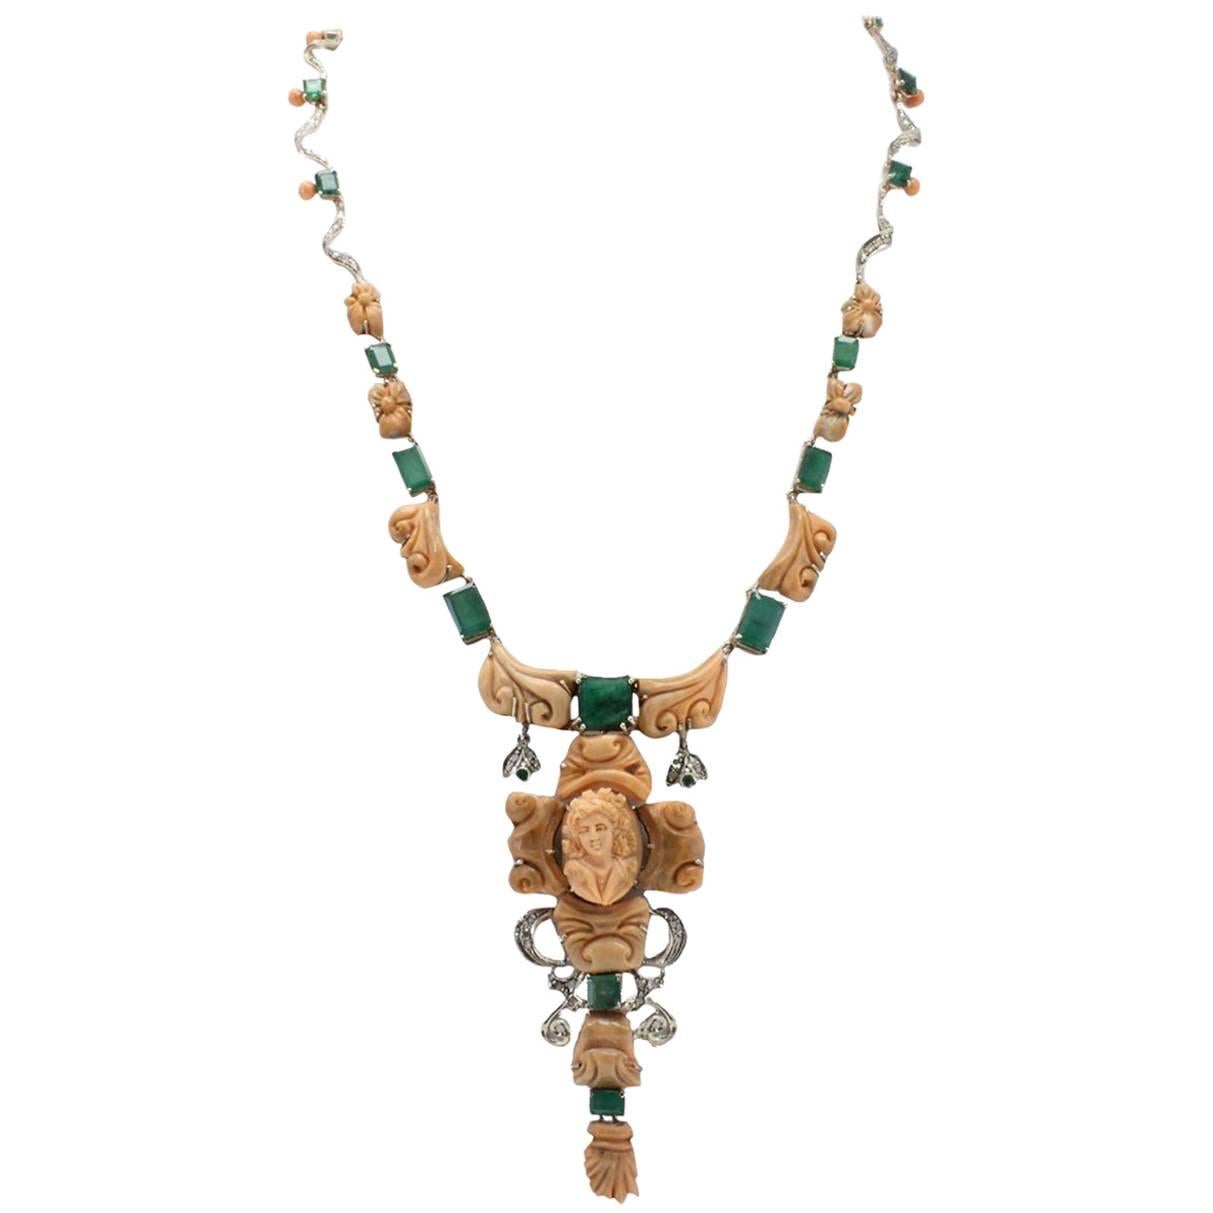 Diamanten, Smaragde, eingravierte orangefarbene Korallen, Retrò-Halskette mit Glied aus Roségold/Silber